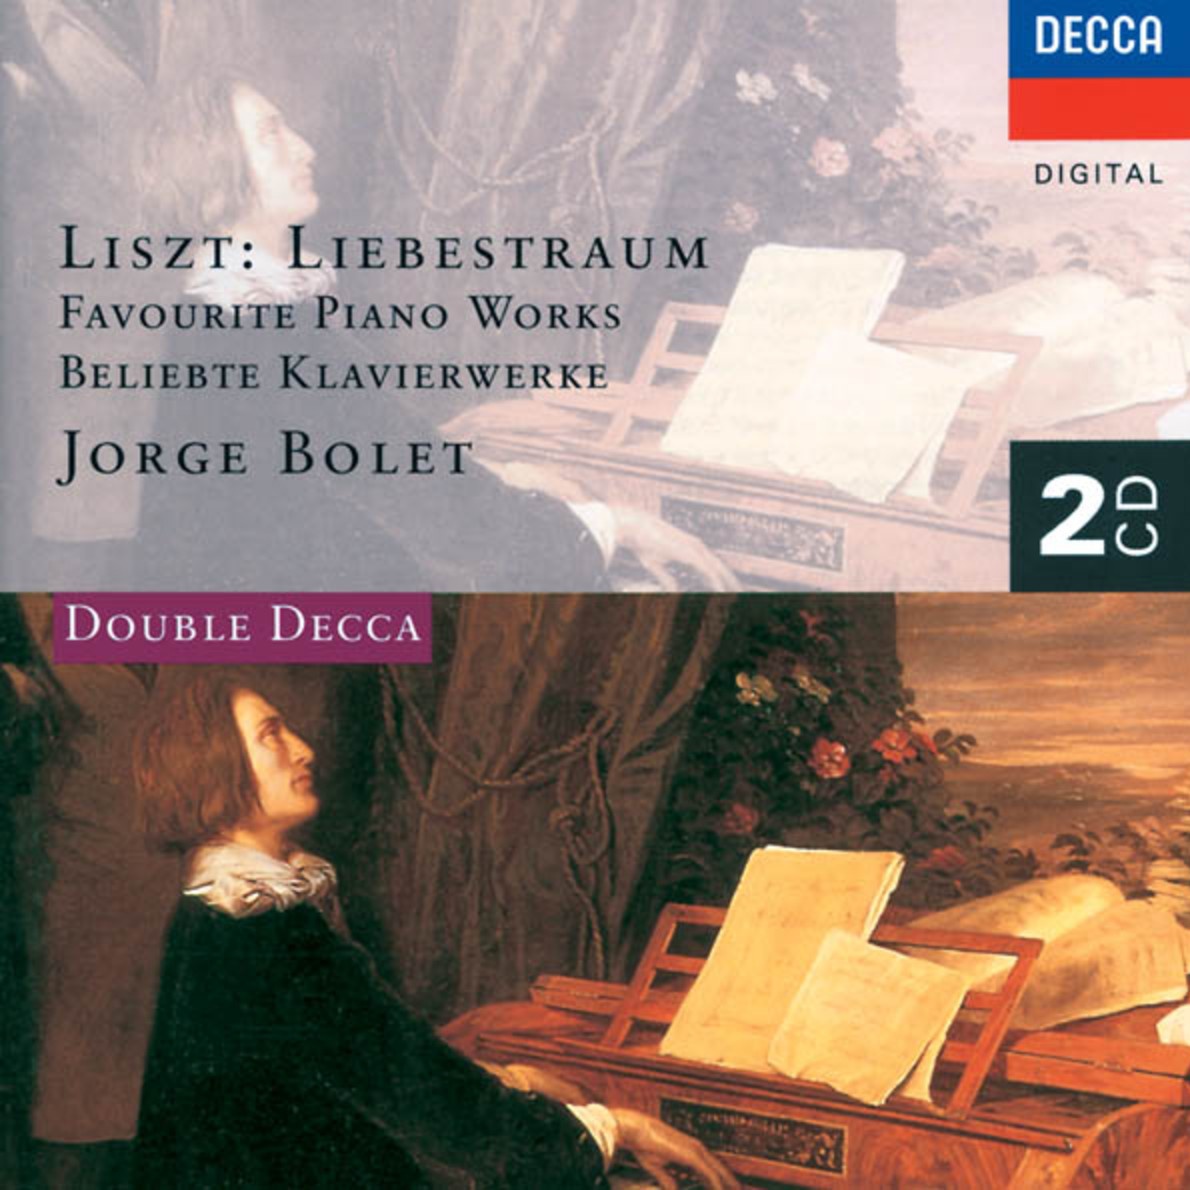 Liszt: Re miniscences de Don Juan, S. 418 after Mozart